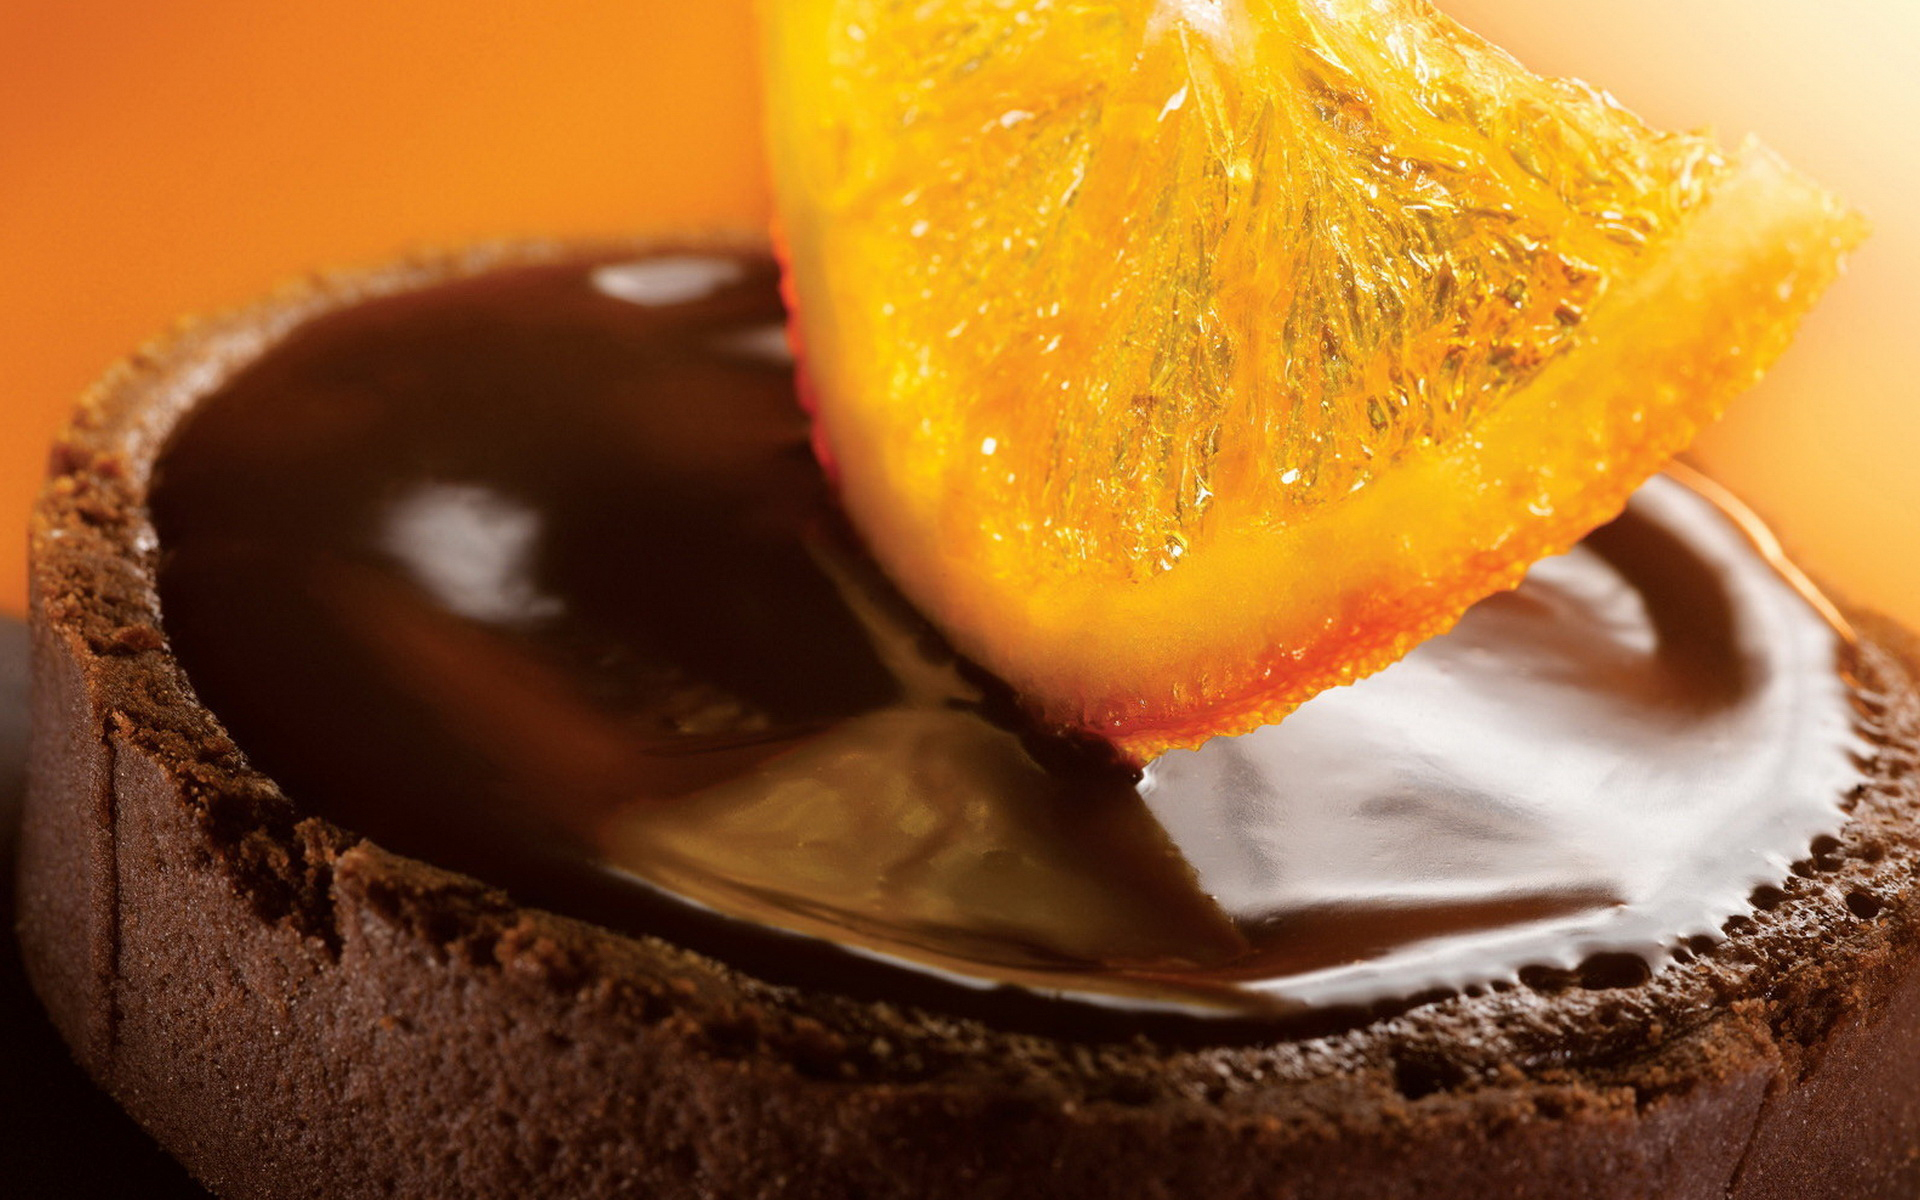 еда торт апельсины шоколад food cake oranges chocolate загрузить